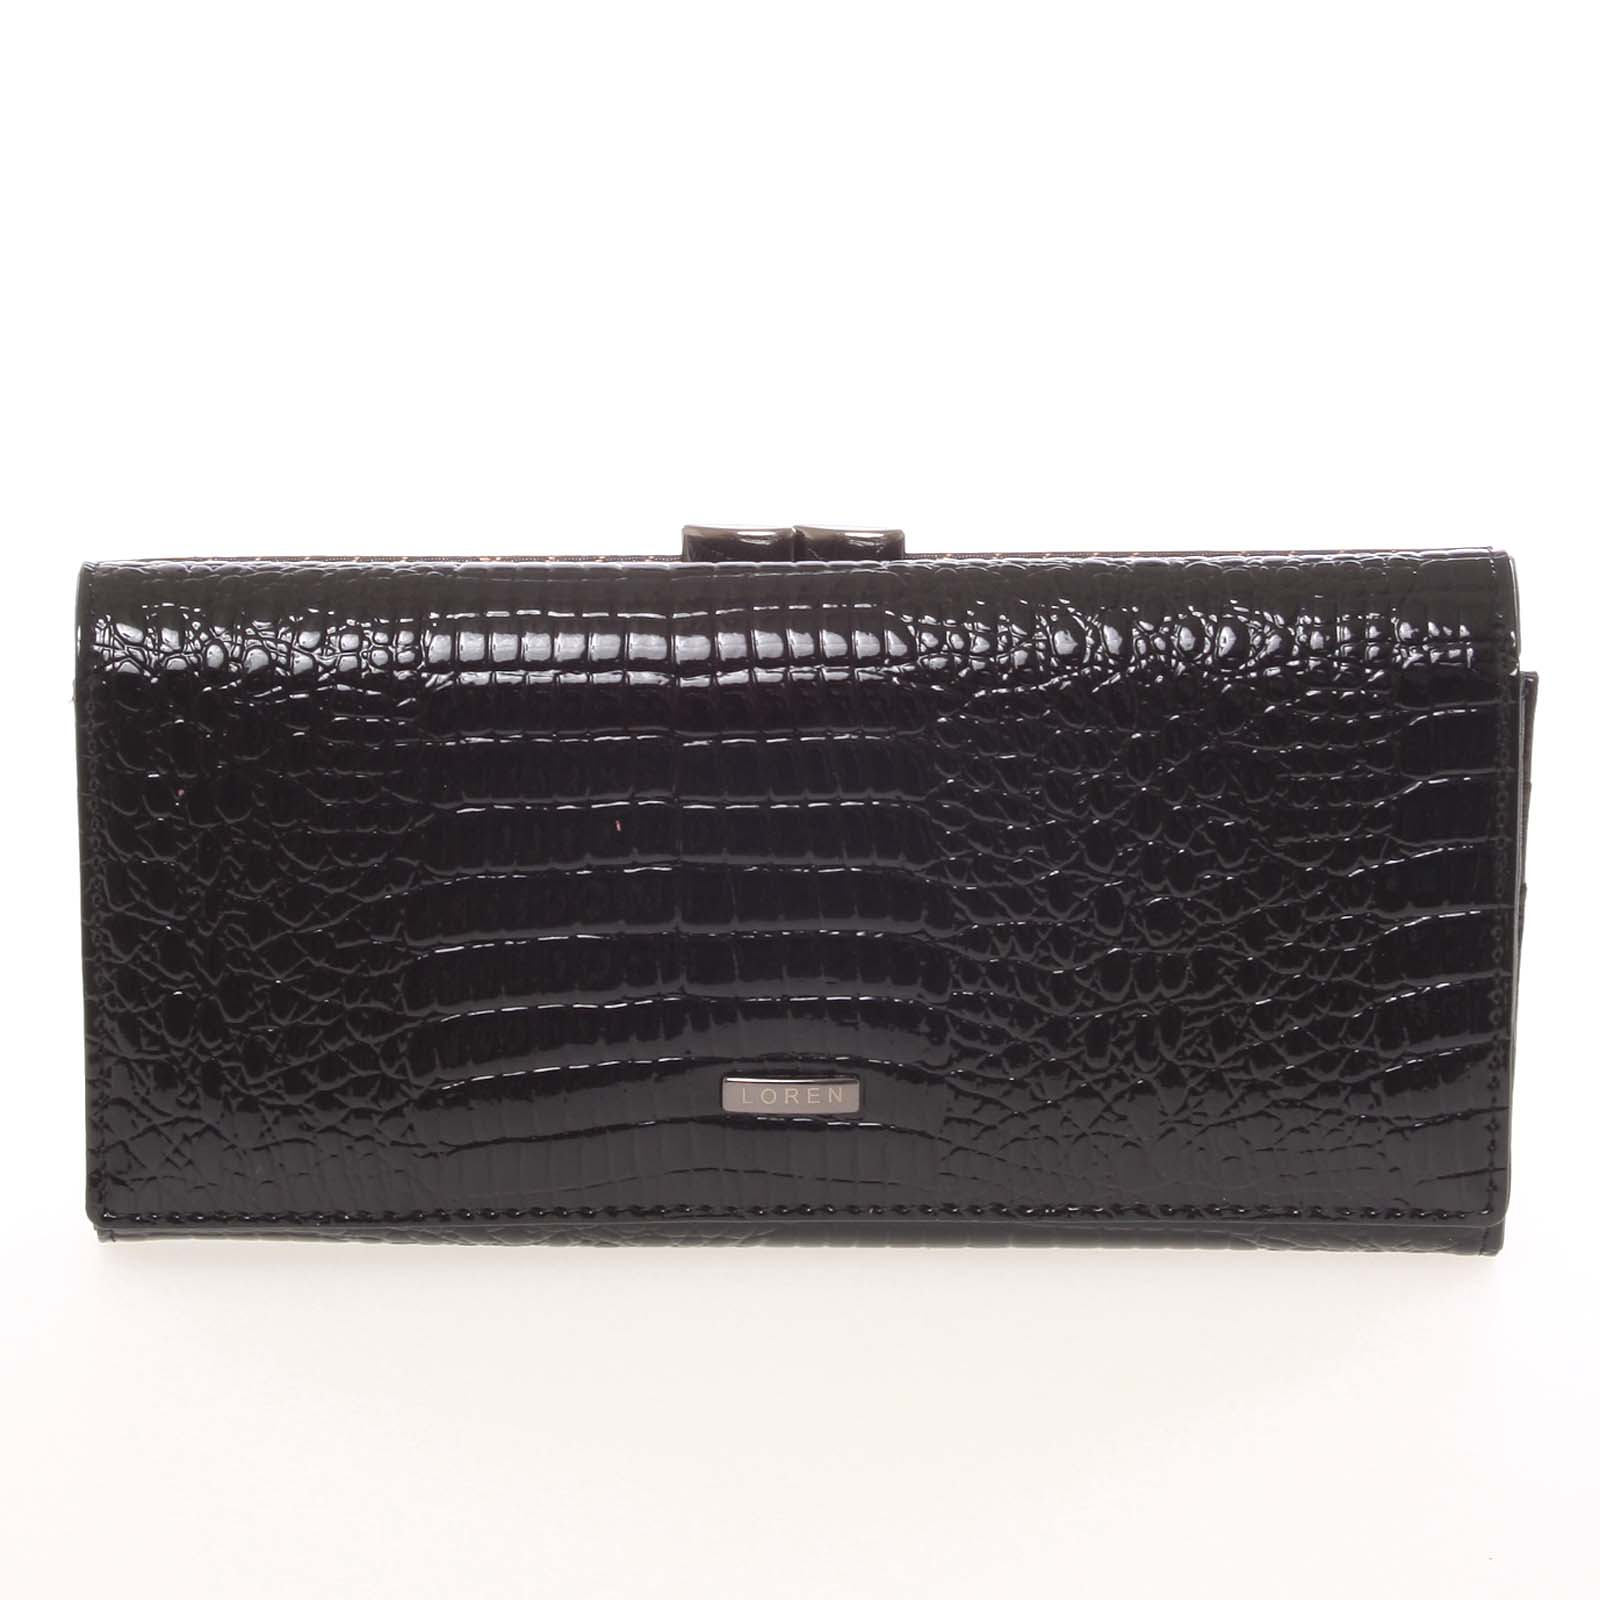 Velká dámská elegantní kožená lakovaná peněženka černá - Loren 2031